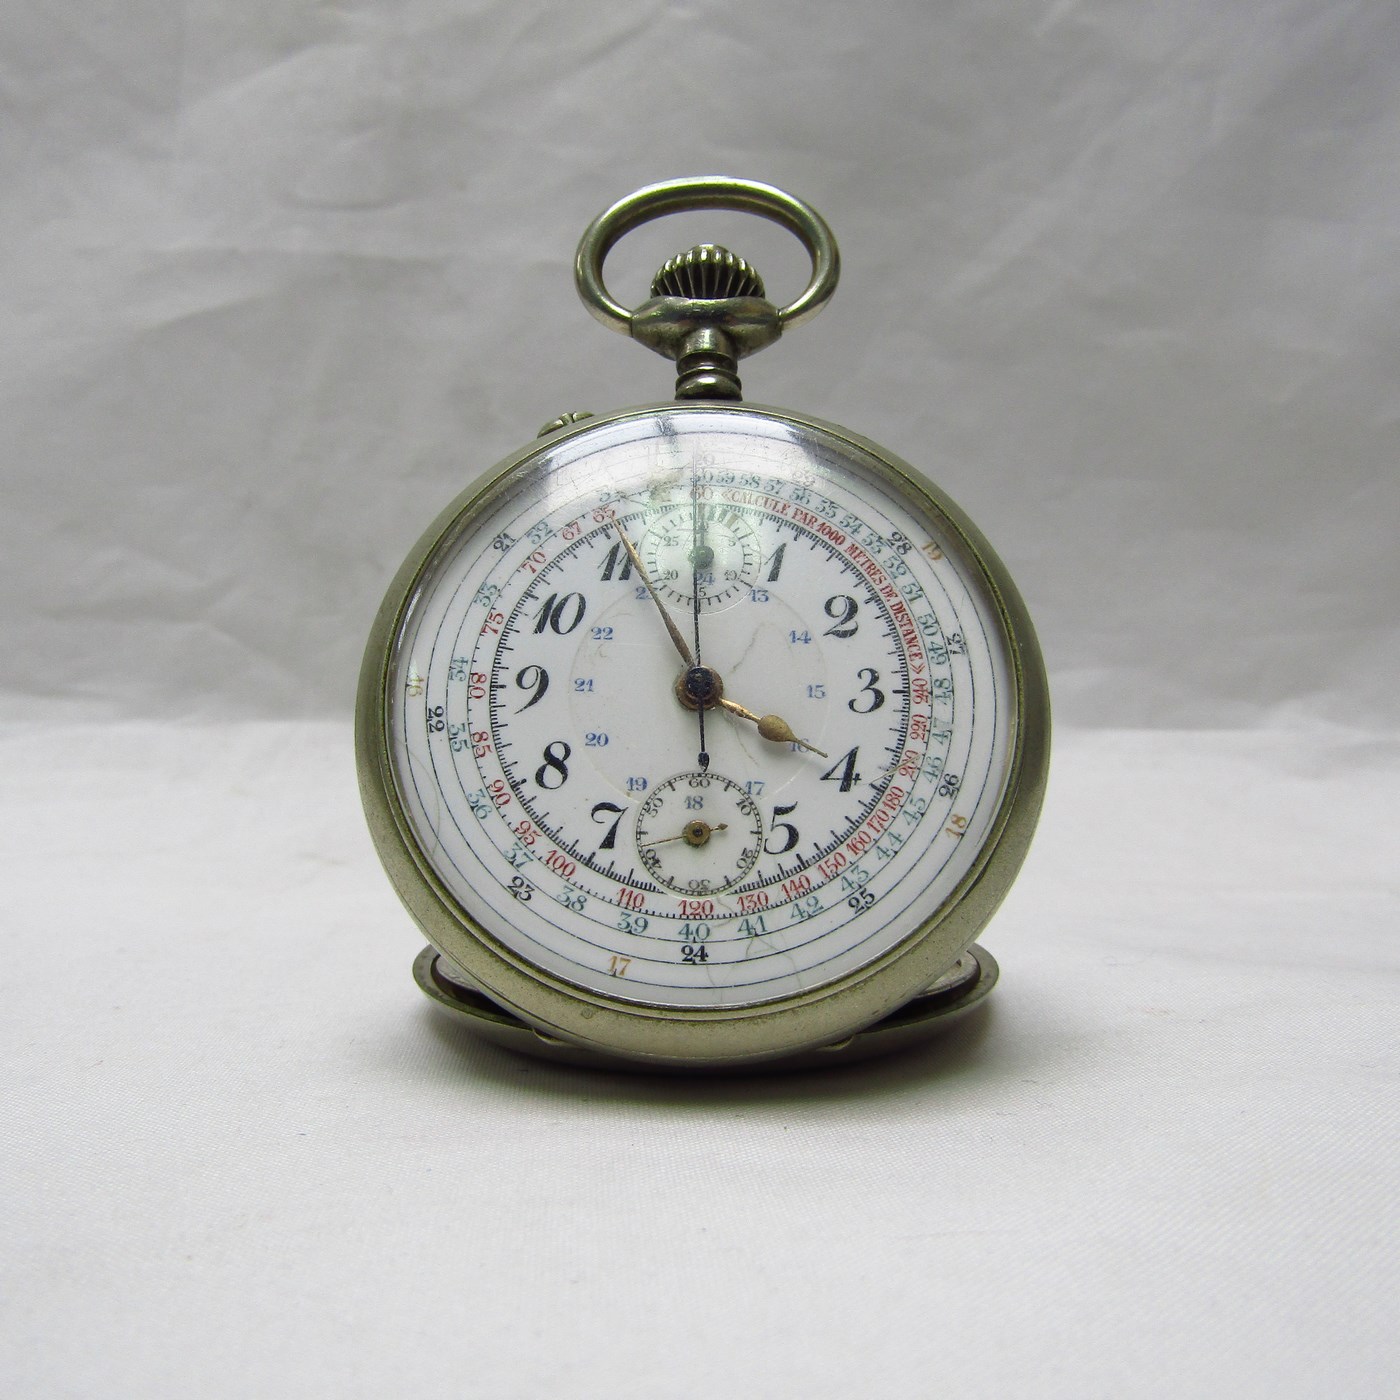 Reloj-Cronómetro Suizo, Lepine y remontoir. Suiza, ca. 1900.